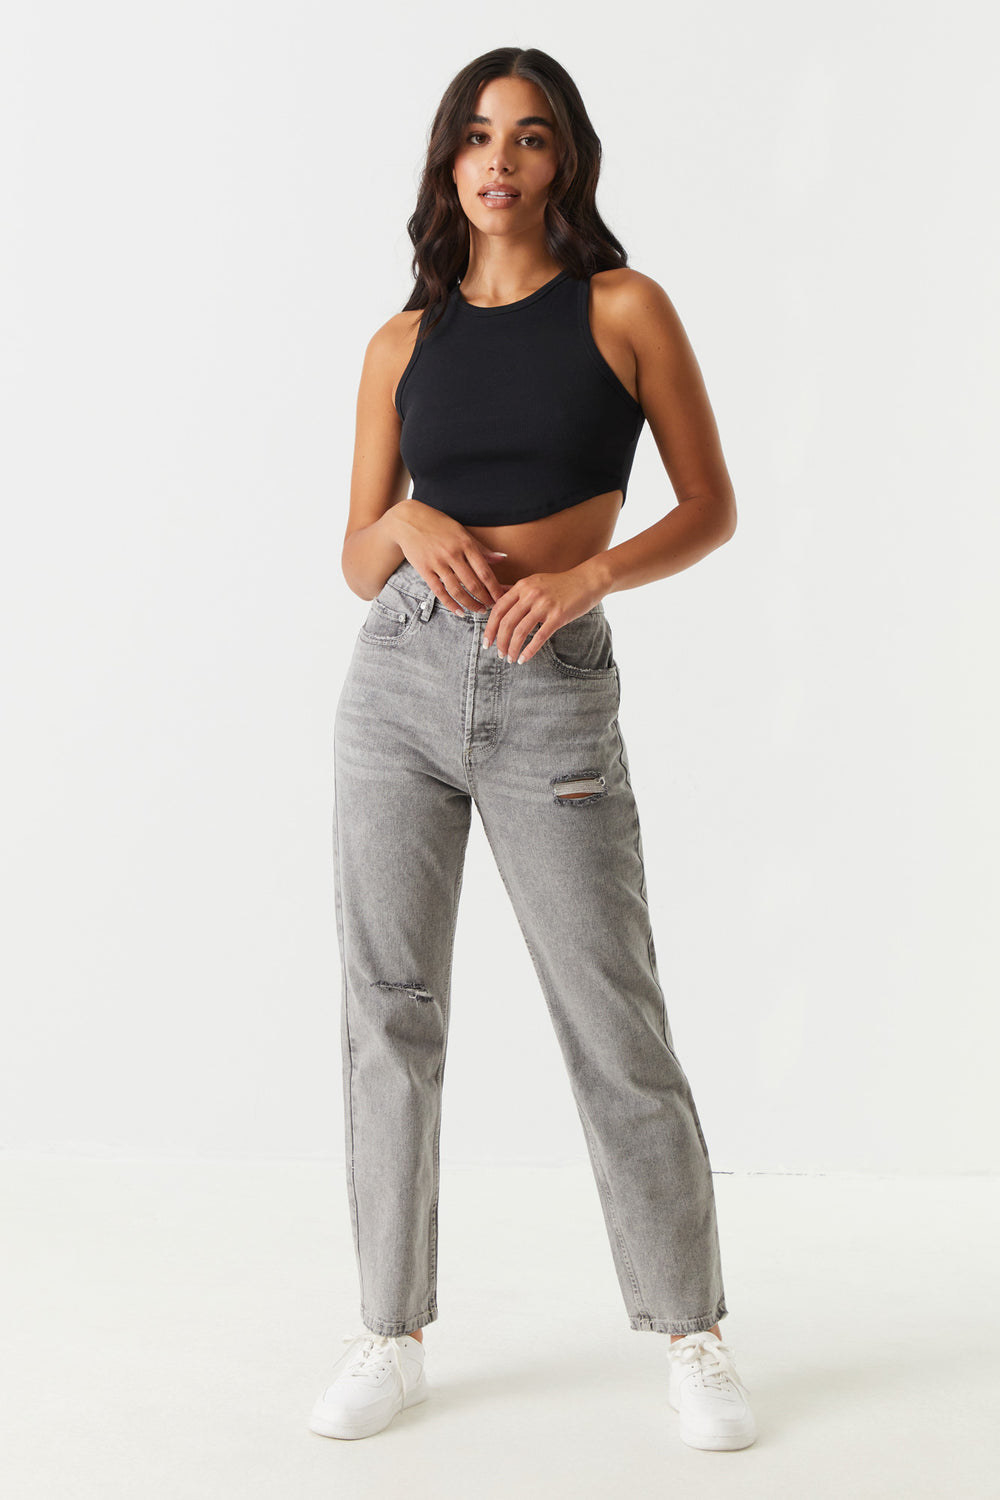 model wearing grey jeans